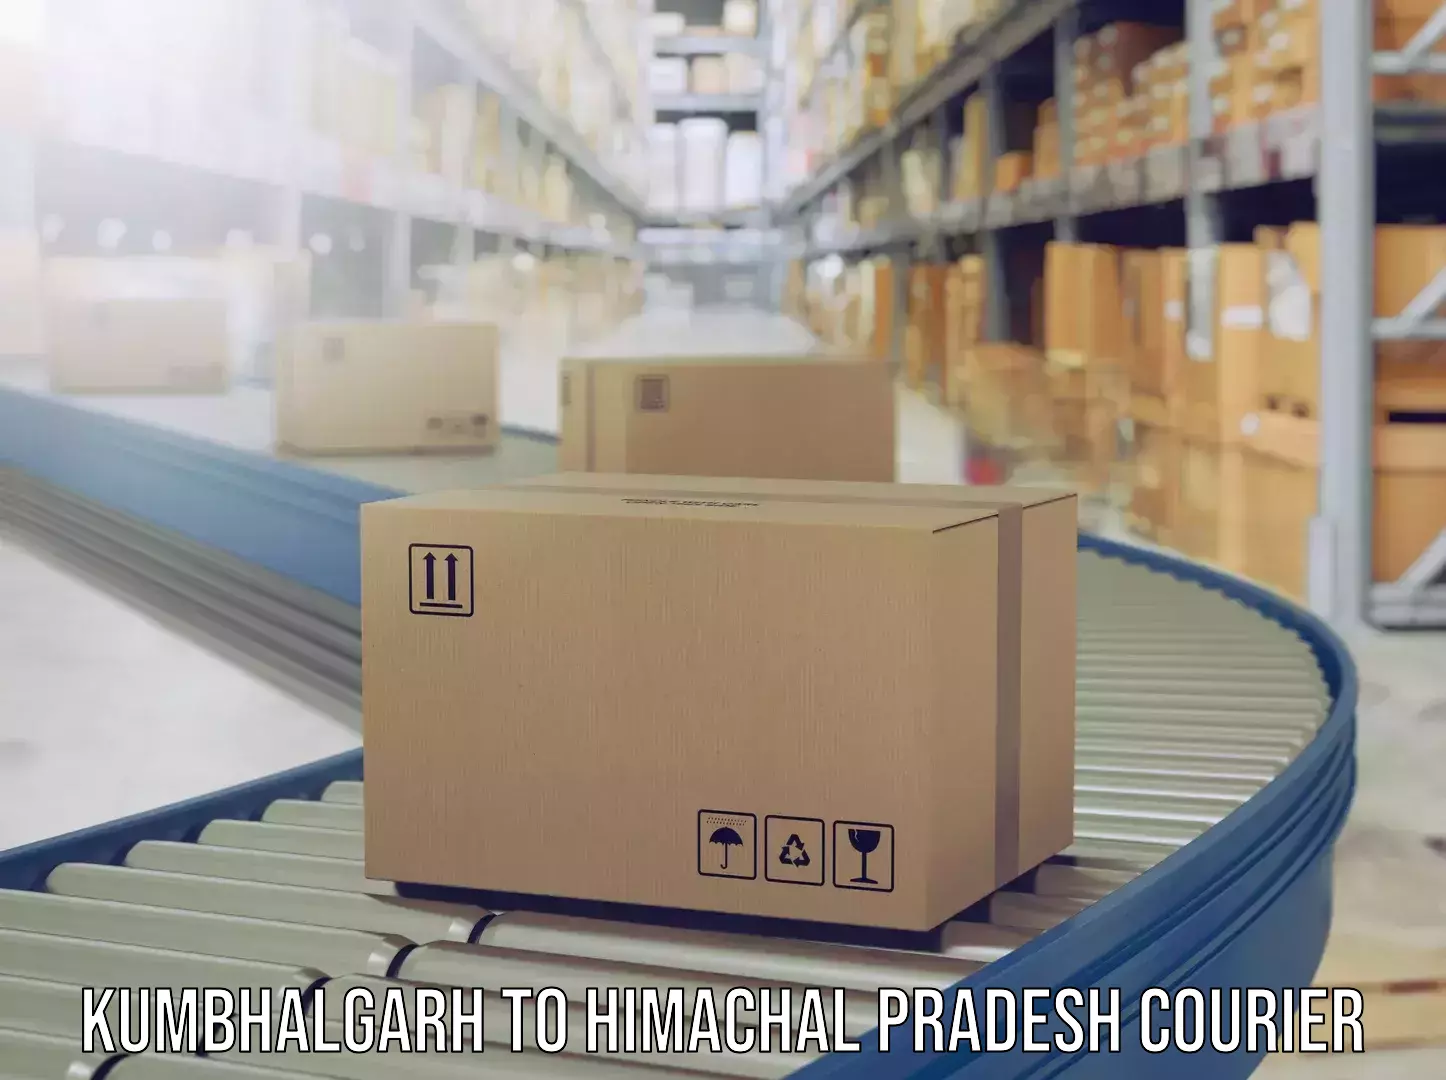 Luggage delivery network Kumbhalgarh to Himachal Pradesh